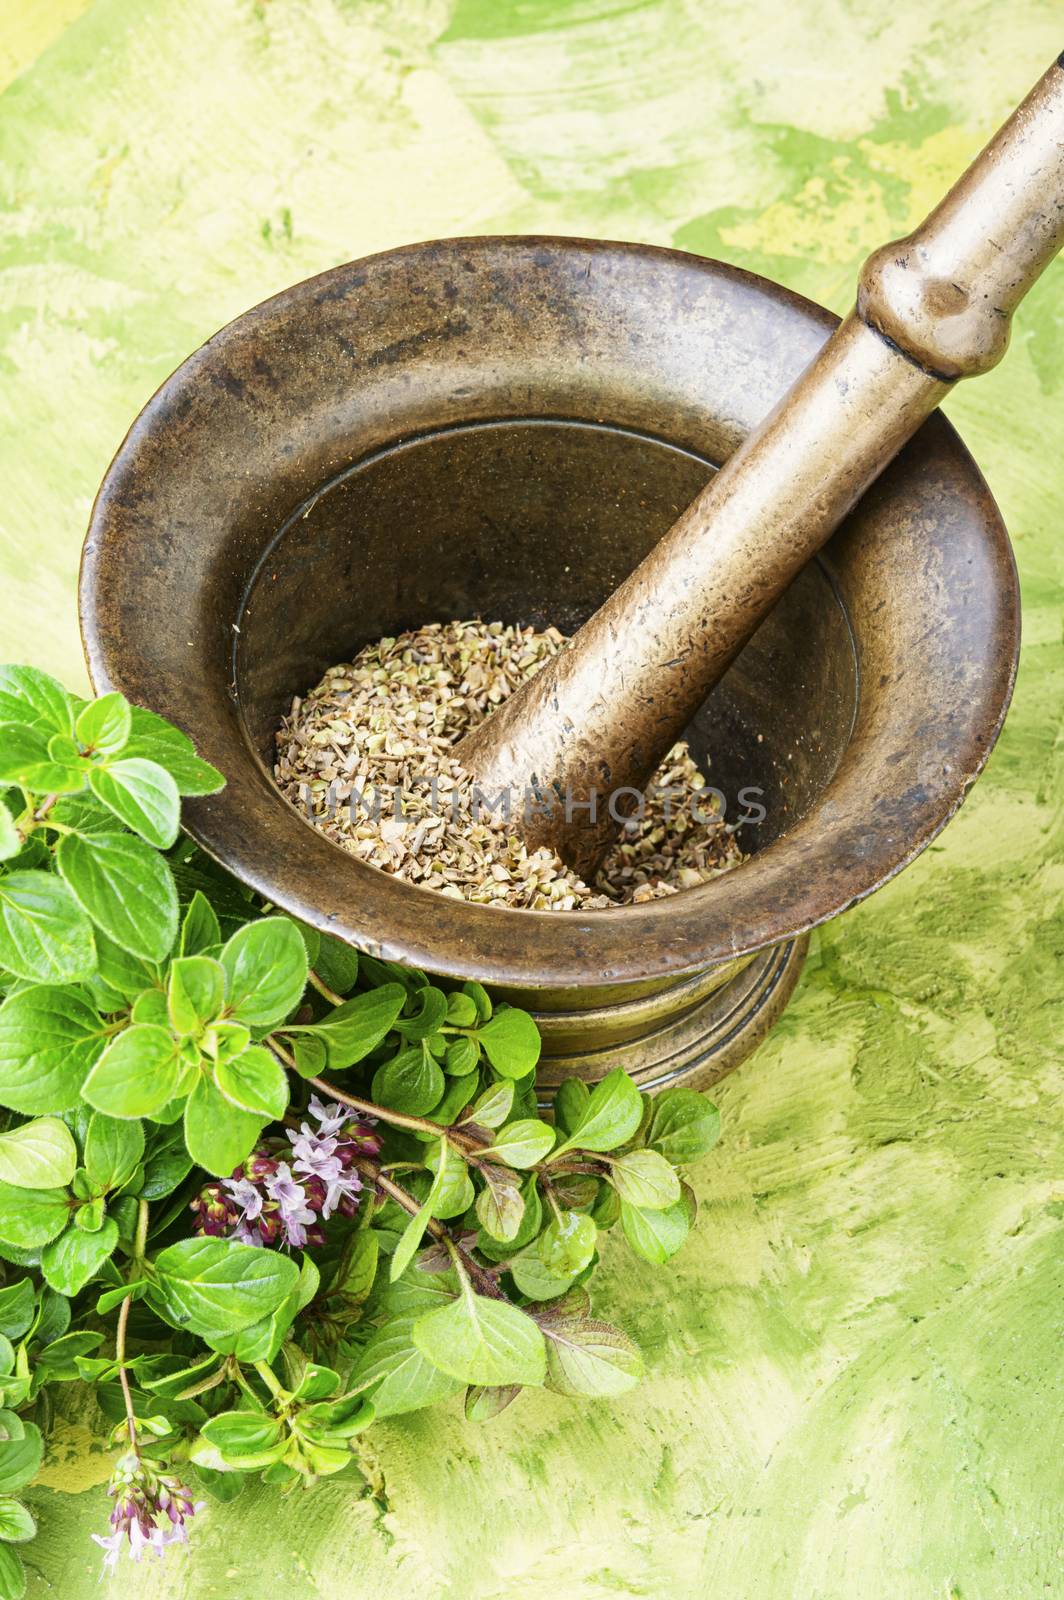 Oregano or marjoram leaves in herbal medicine